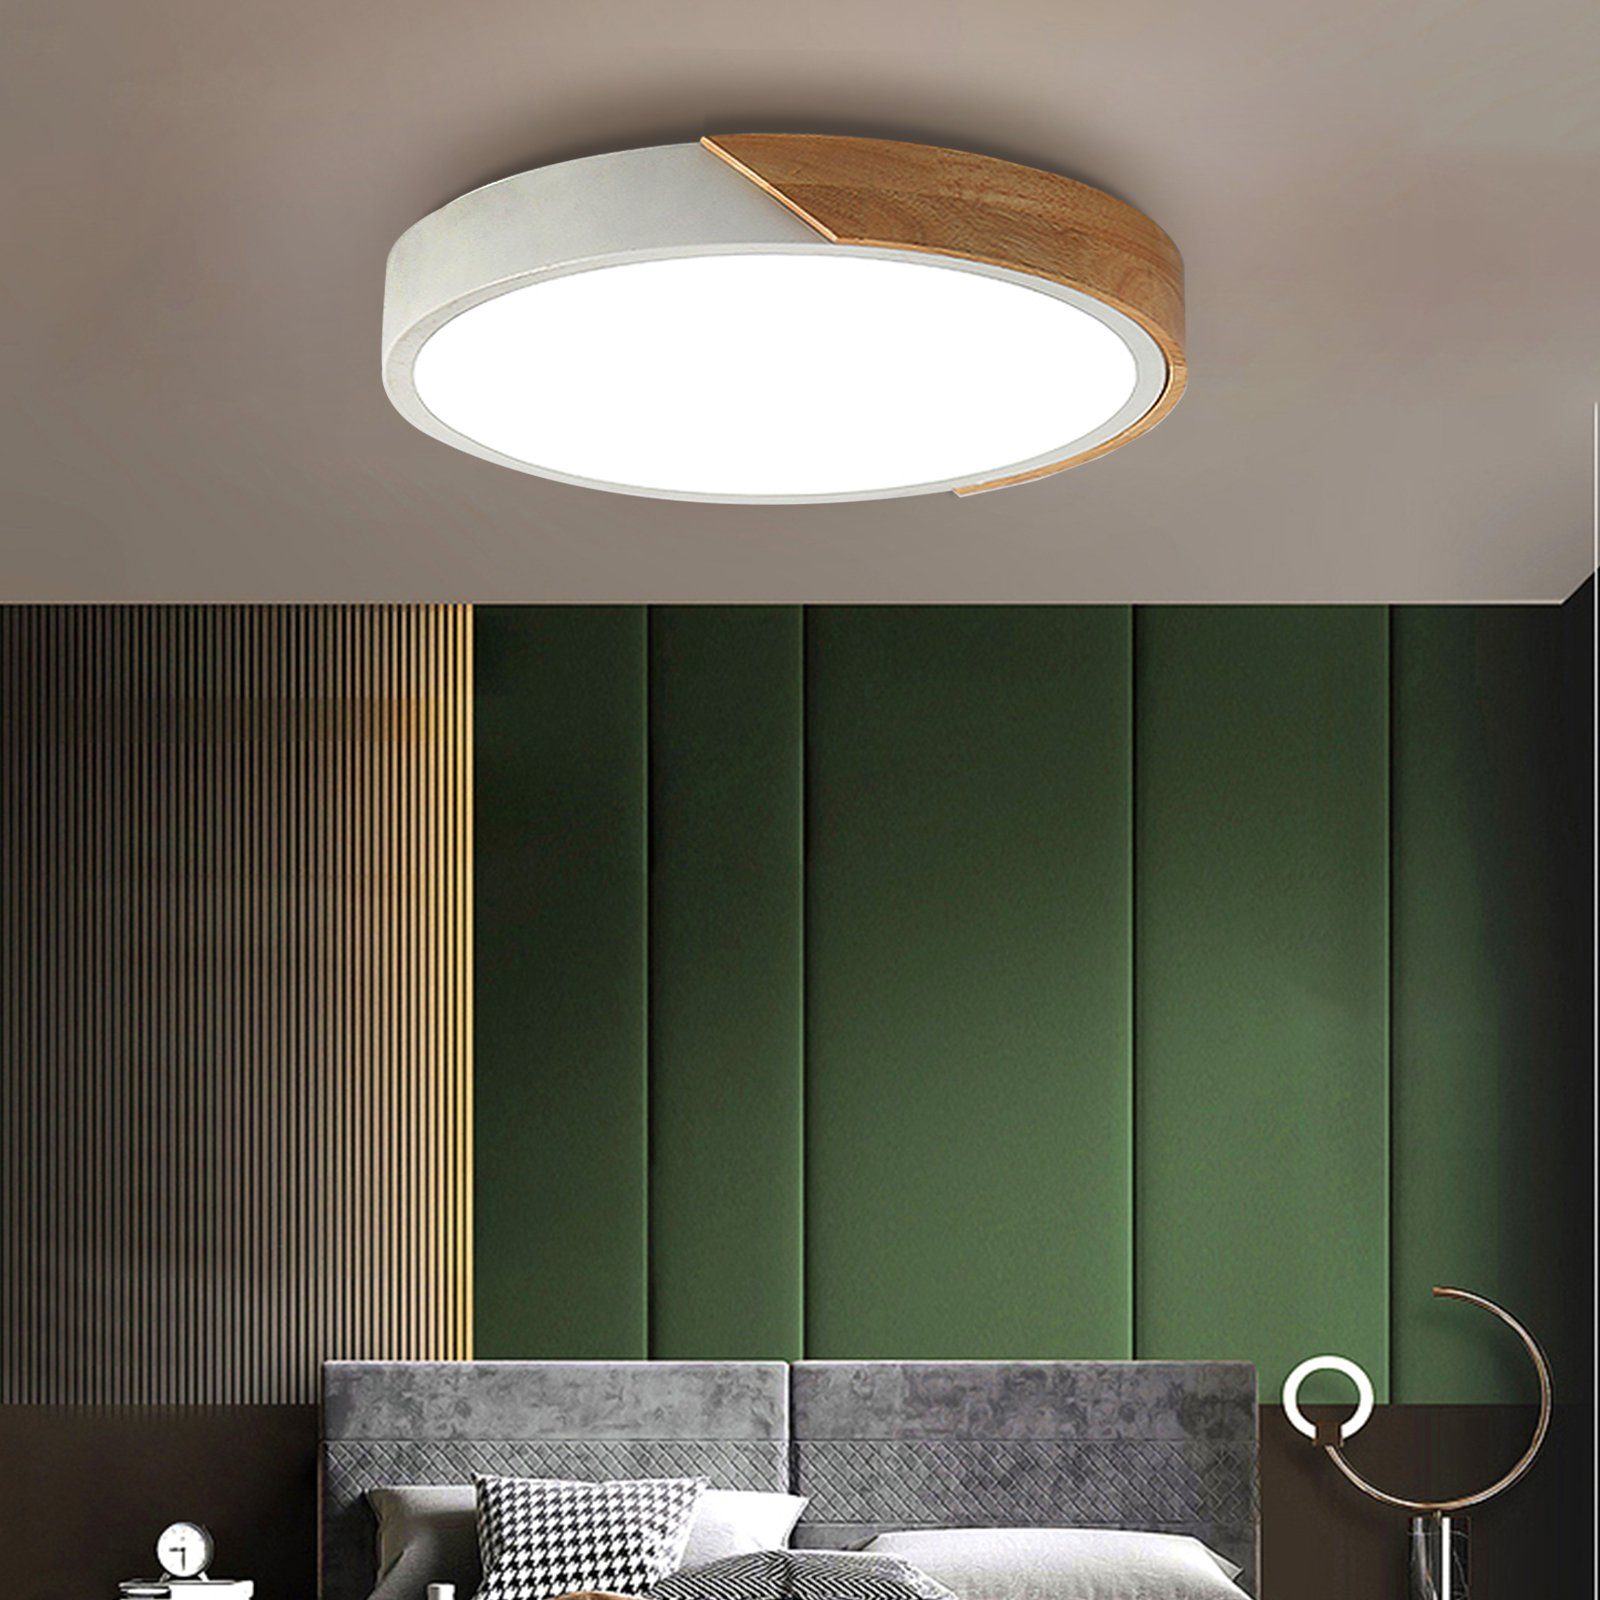 Natsen Deckenleuchte, 24W LED Deckenlampe Holz rund (40 x 40 x 5cm),  dimmbar mit Fernbedienung warmweiss-kaltweiss Lampe, für Esszimmer  Kinderzimmer Schlafzimmer